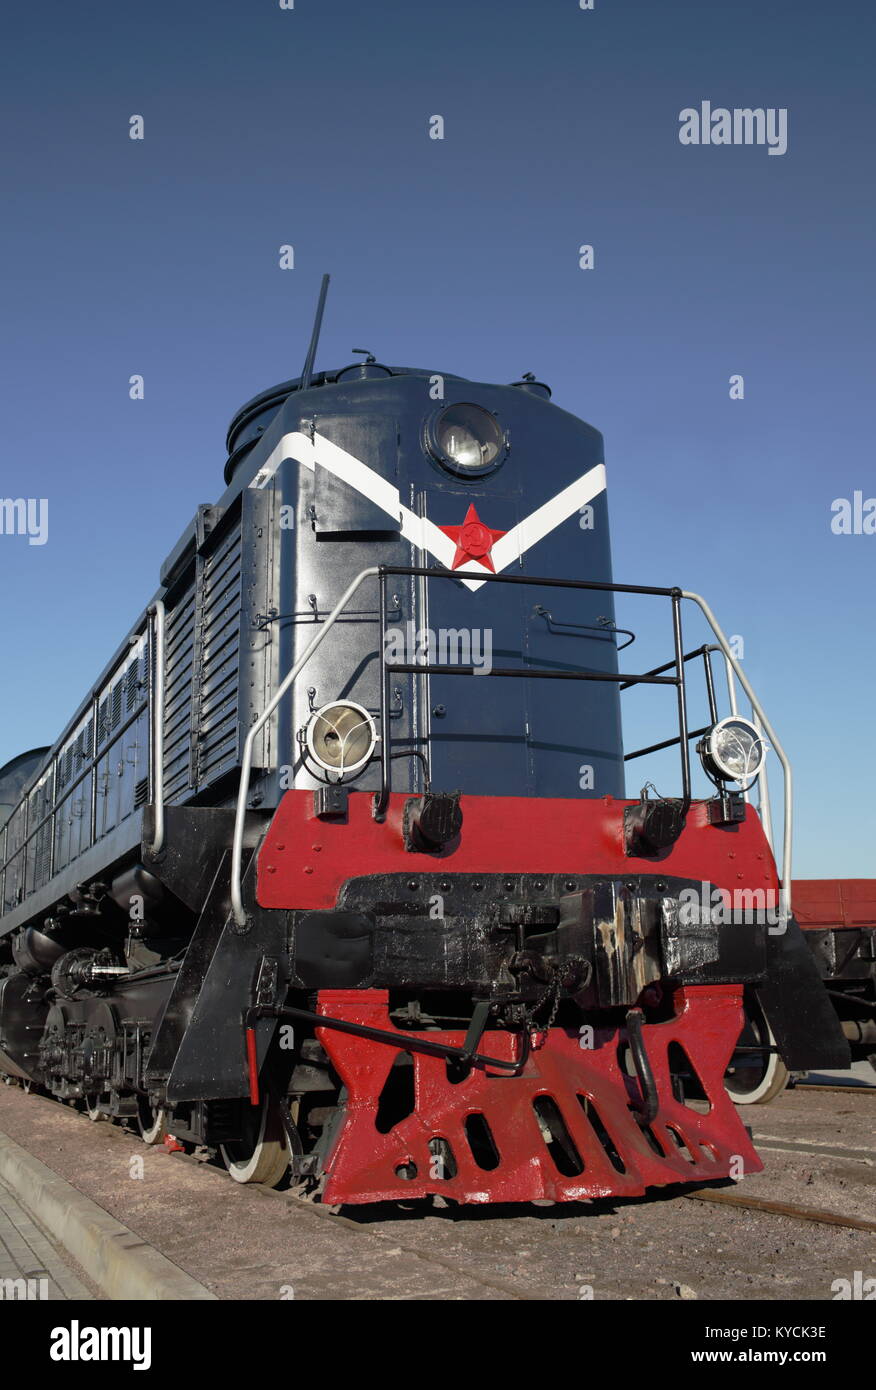 Locomotive bleu avec étoile rouge vue de face Banque D'Images